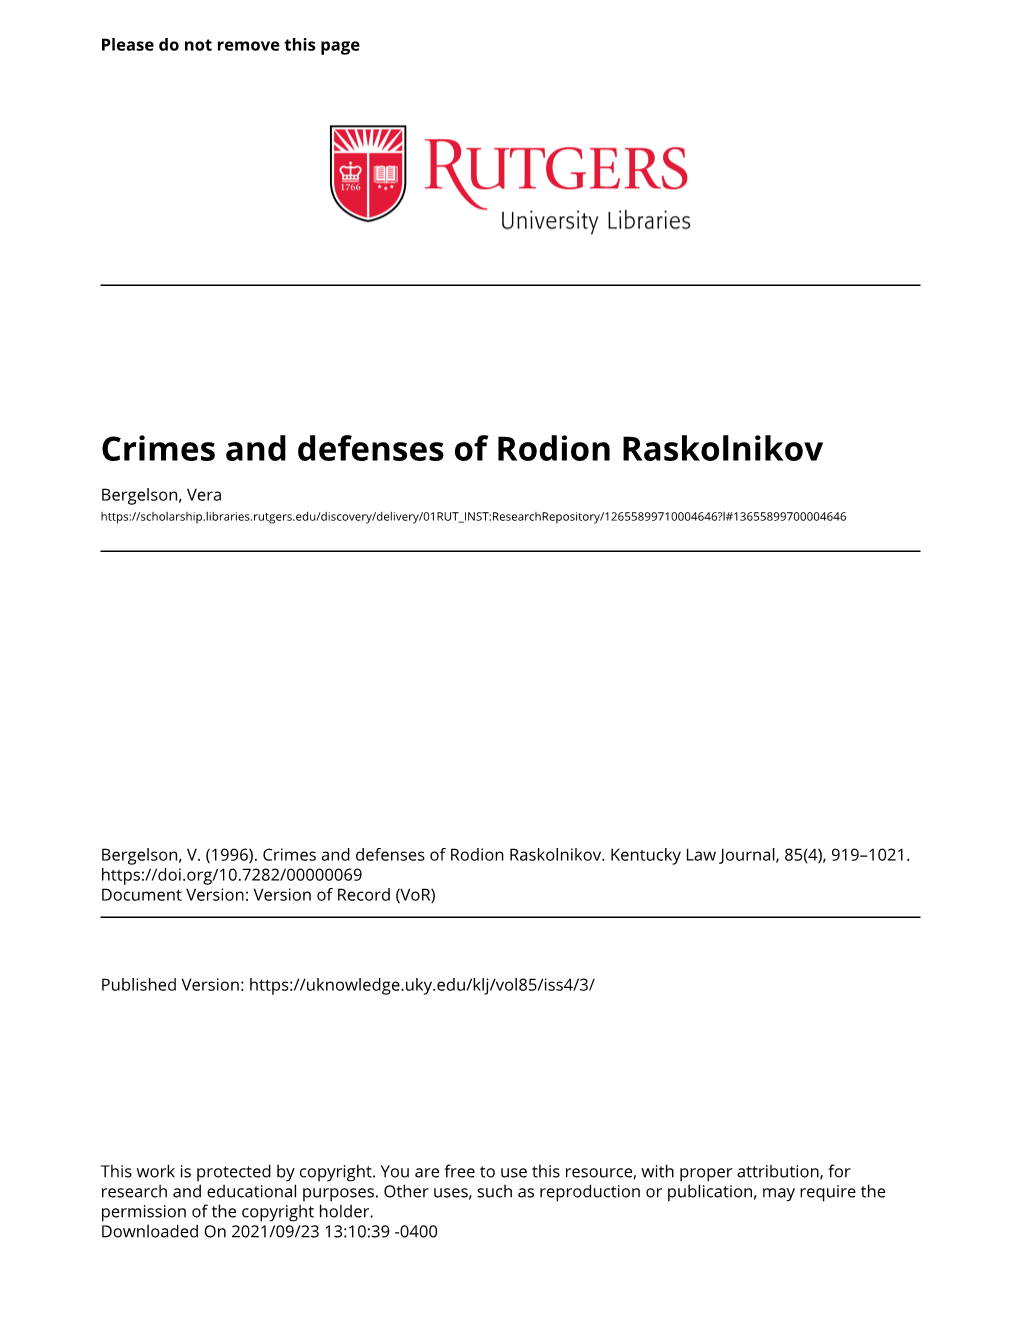 Crimes and Defenses of Rodion Raskolnikov